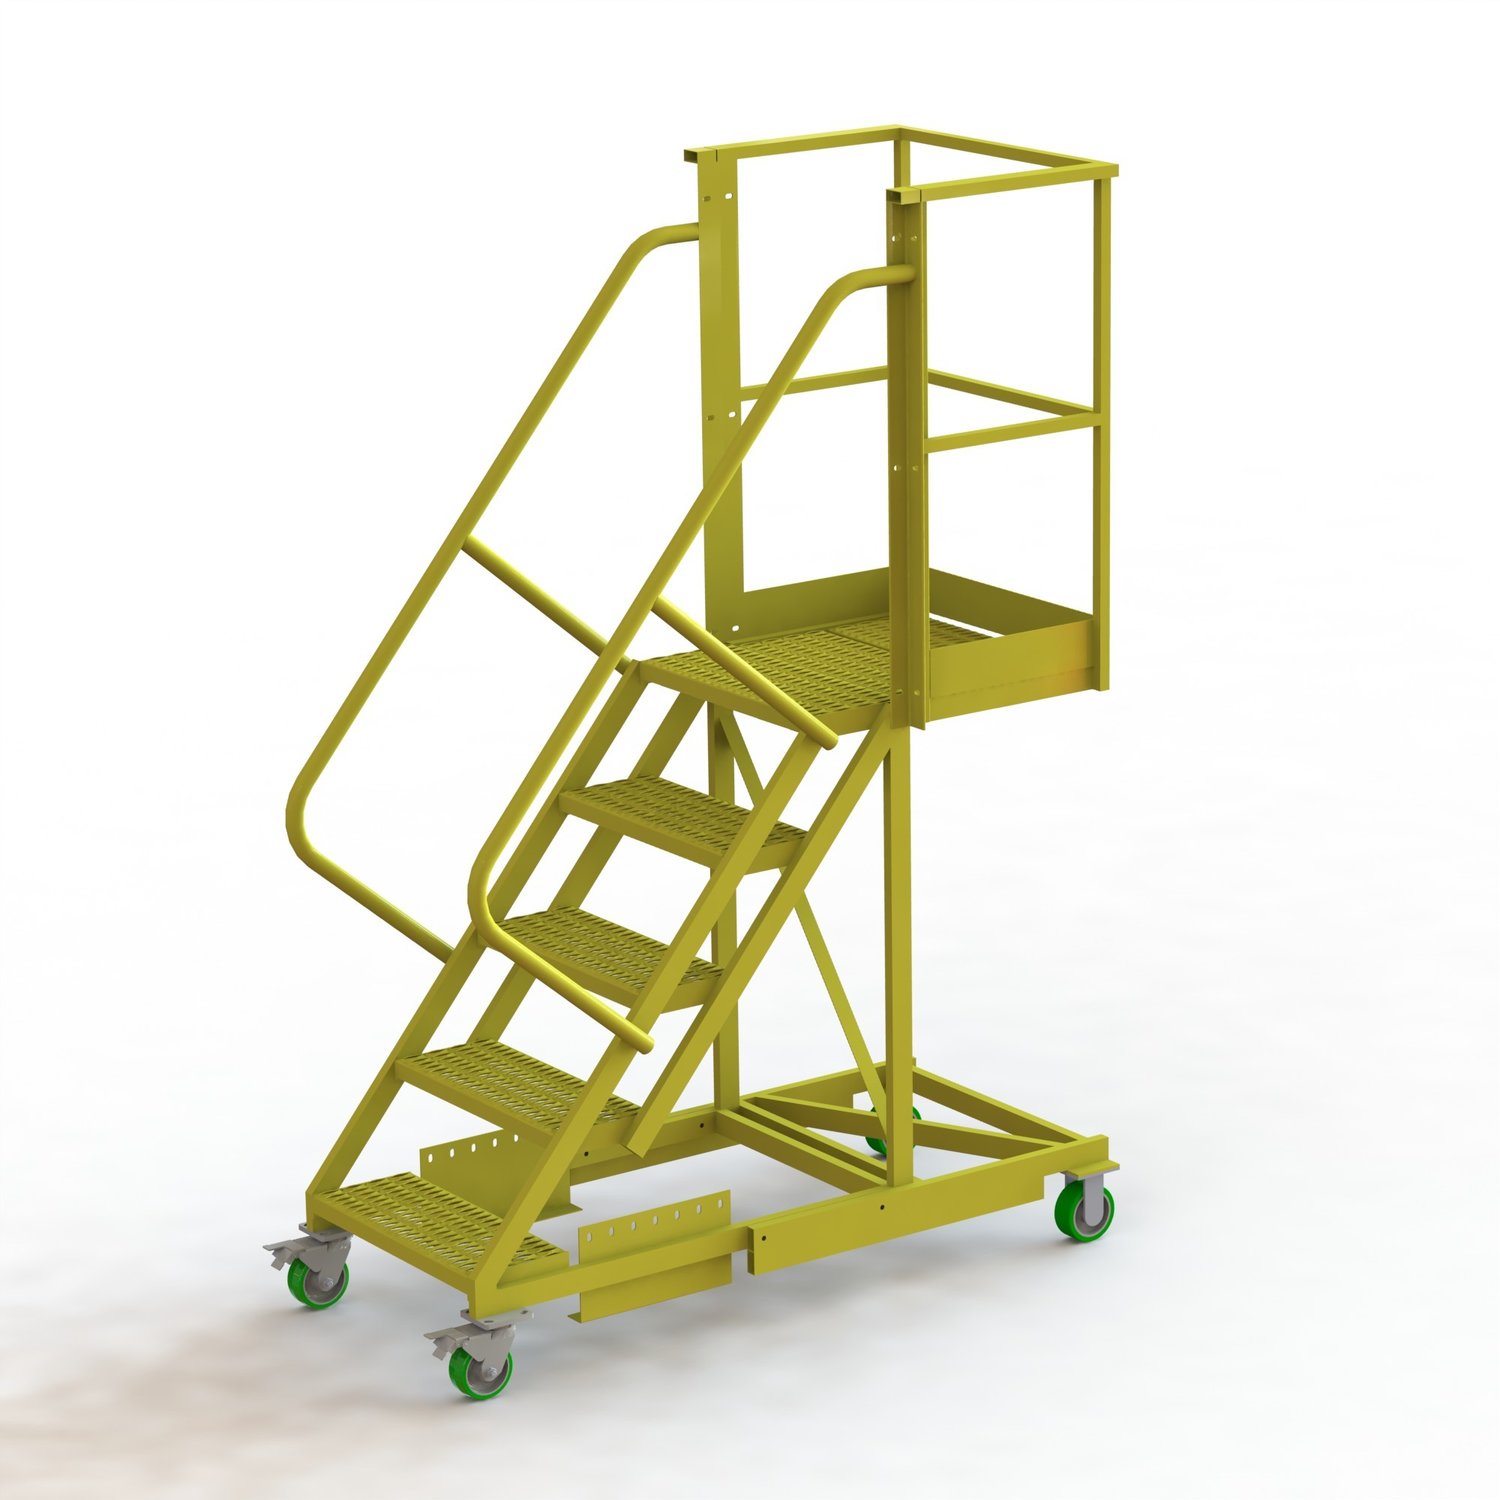 U Design Supported Cantilever and | Platforms Ladders Ladder